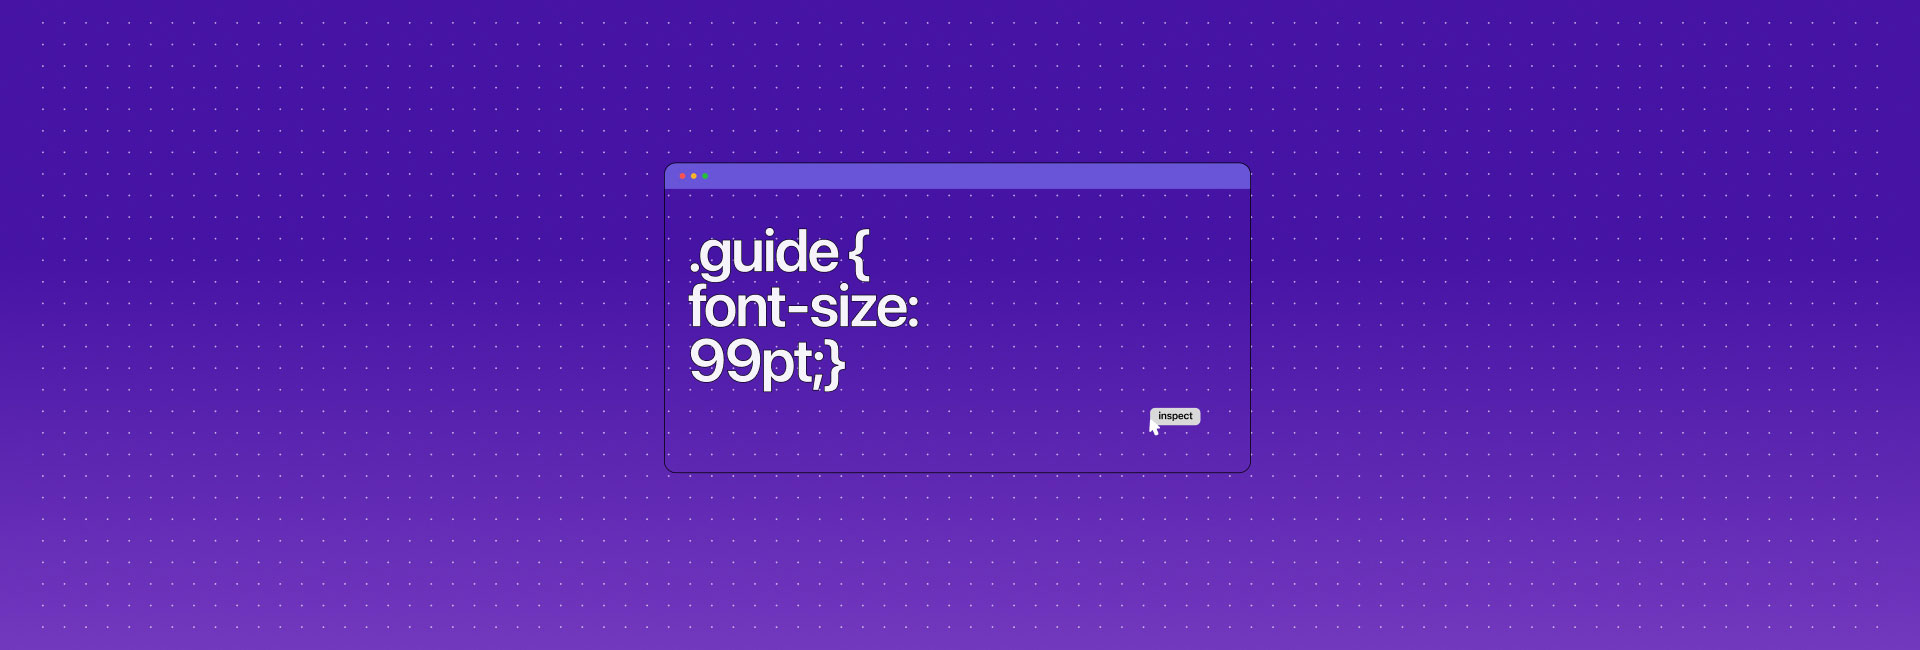 Sử dụng web font như thế nào